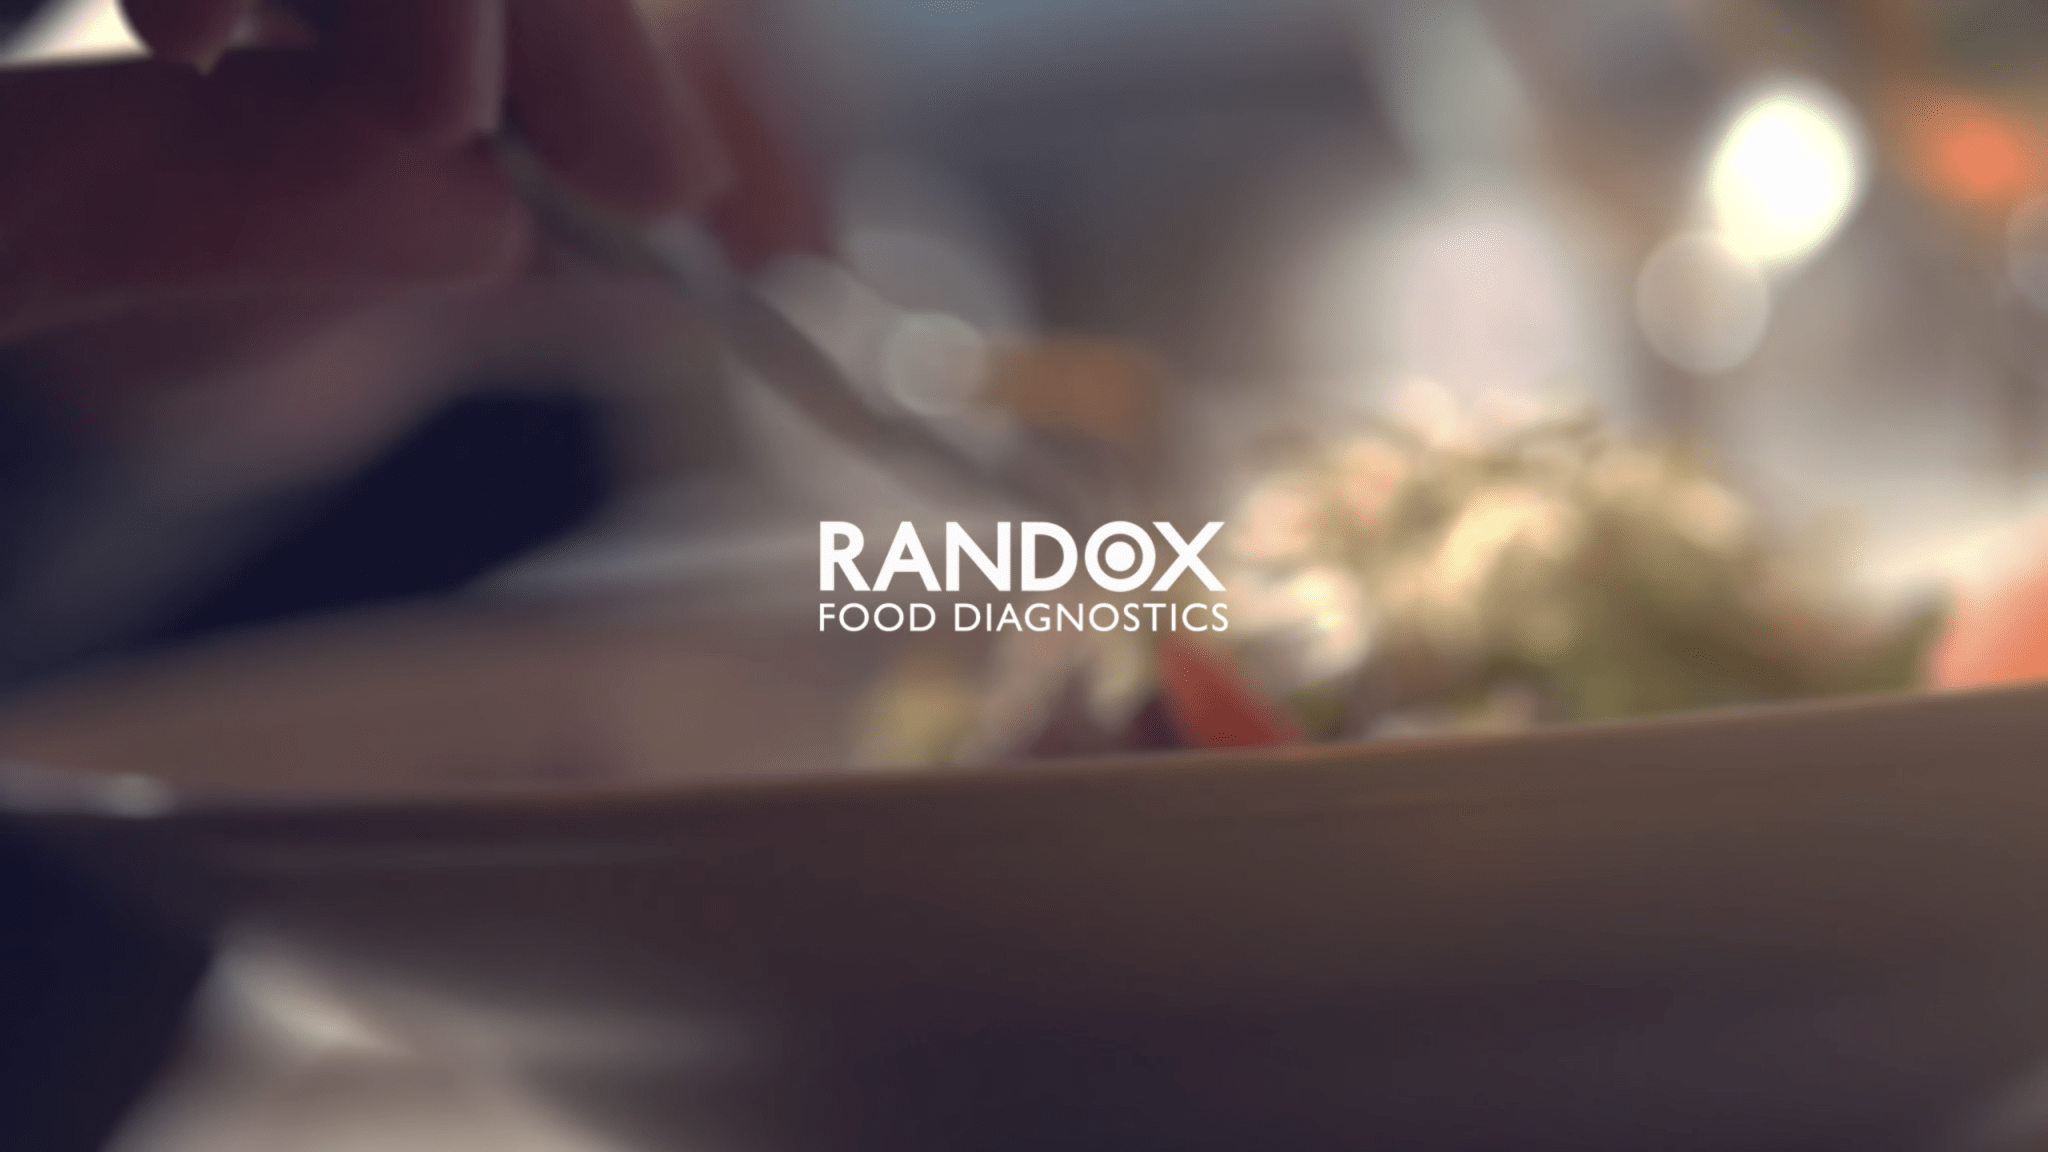 Randox Food Diagnostics - Corporate Video